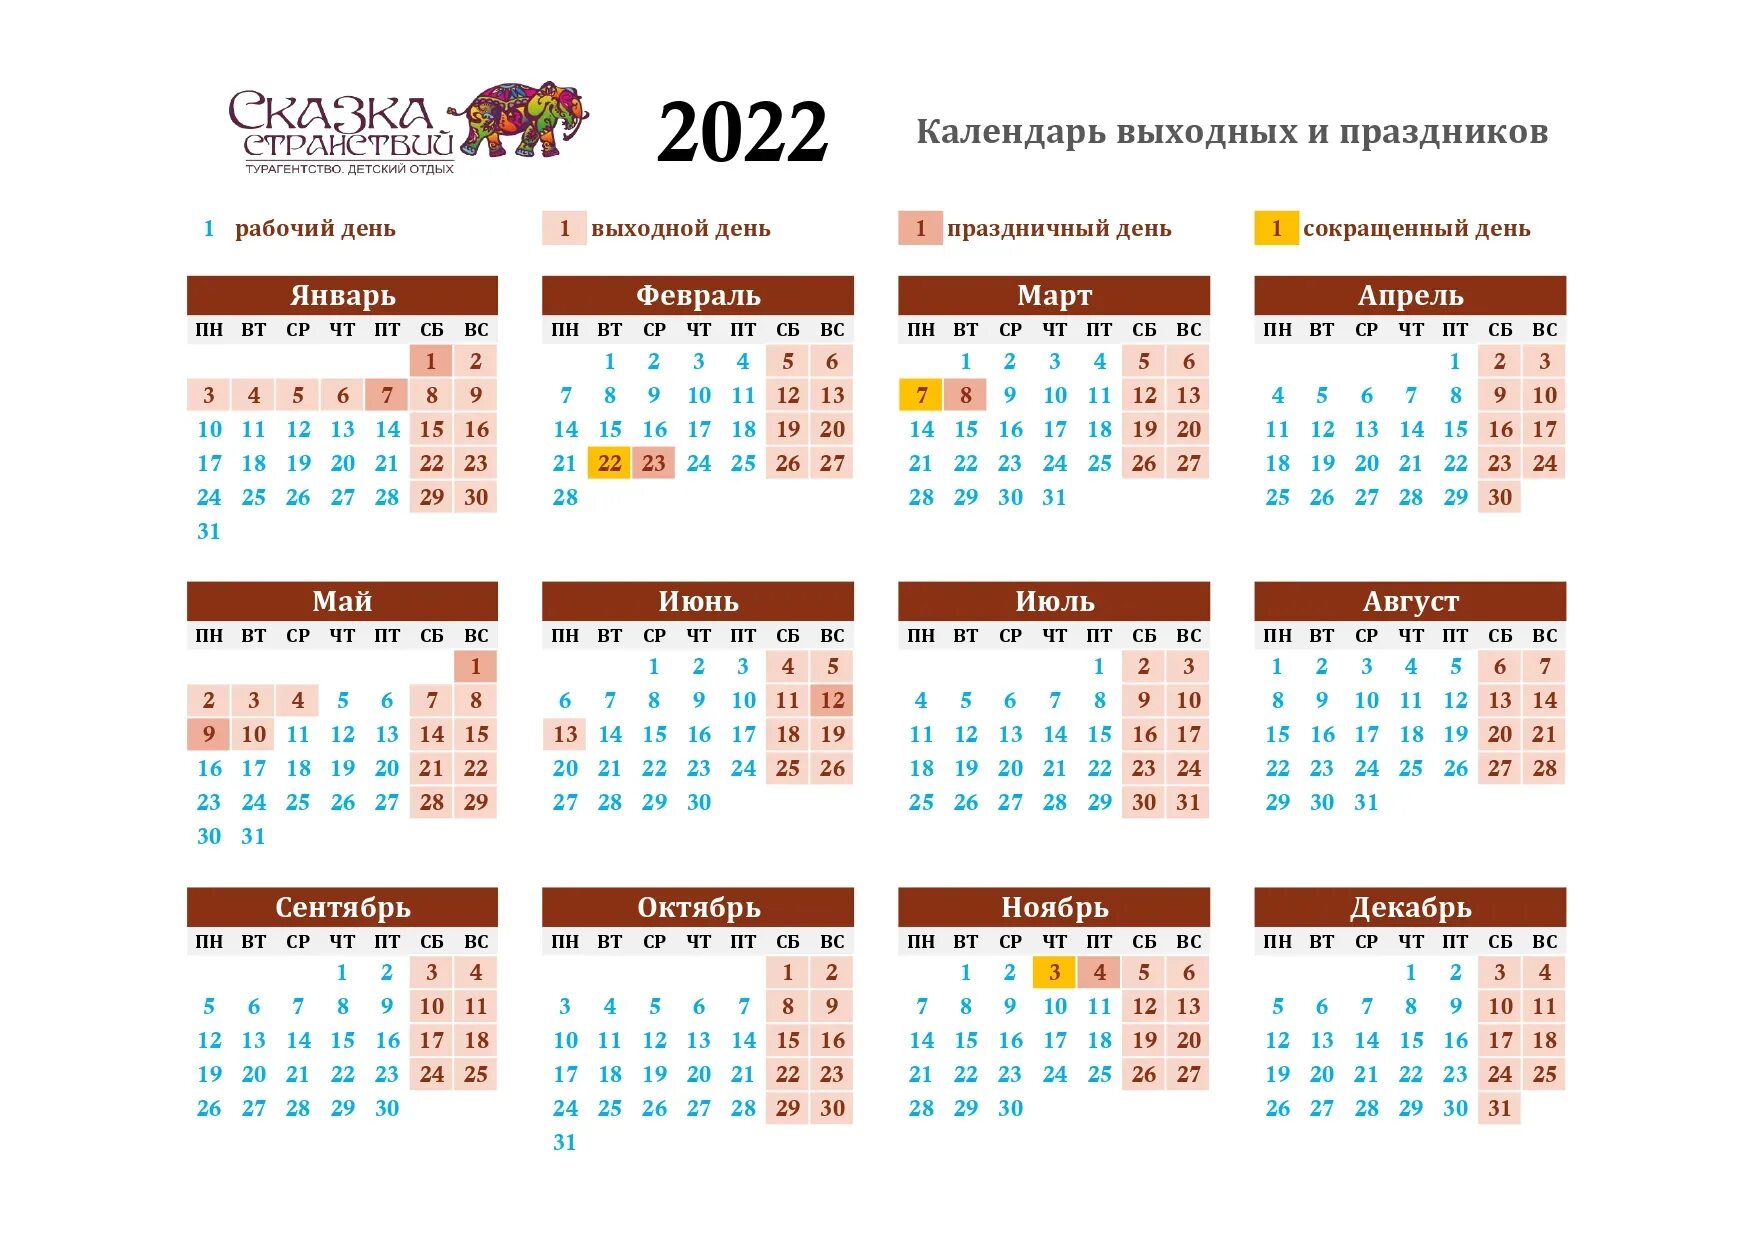 Праздники 2022 официальные выходные календарь. Календарь на 2022 год с праздниками и выходными выходные снизу. Календарь 2022 дни недели сбоку. Праздничный календарь 2022 с праздничными днями в России. Выходные и праздники 2022 года в России нерабочие дни.